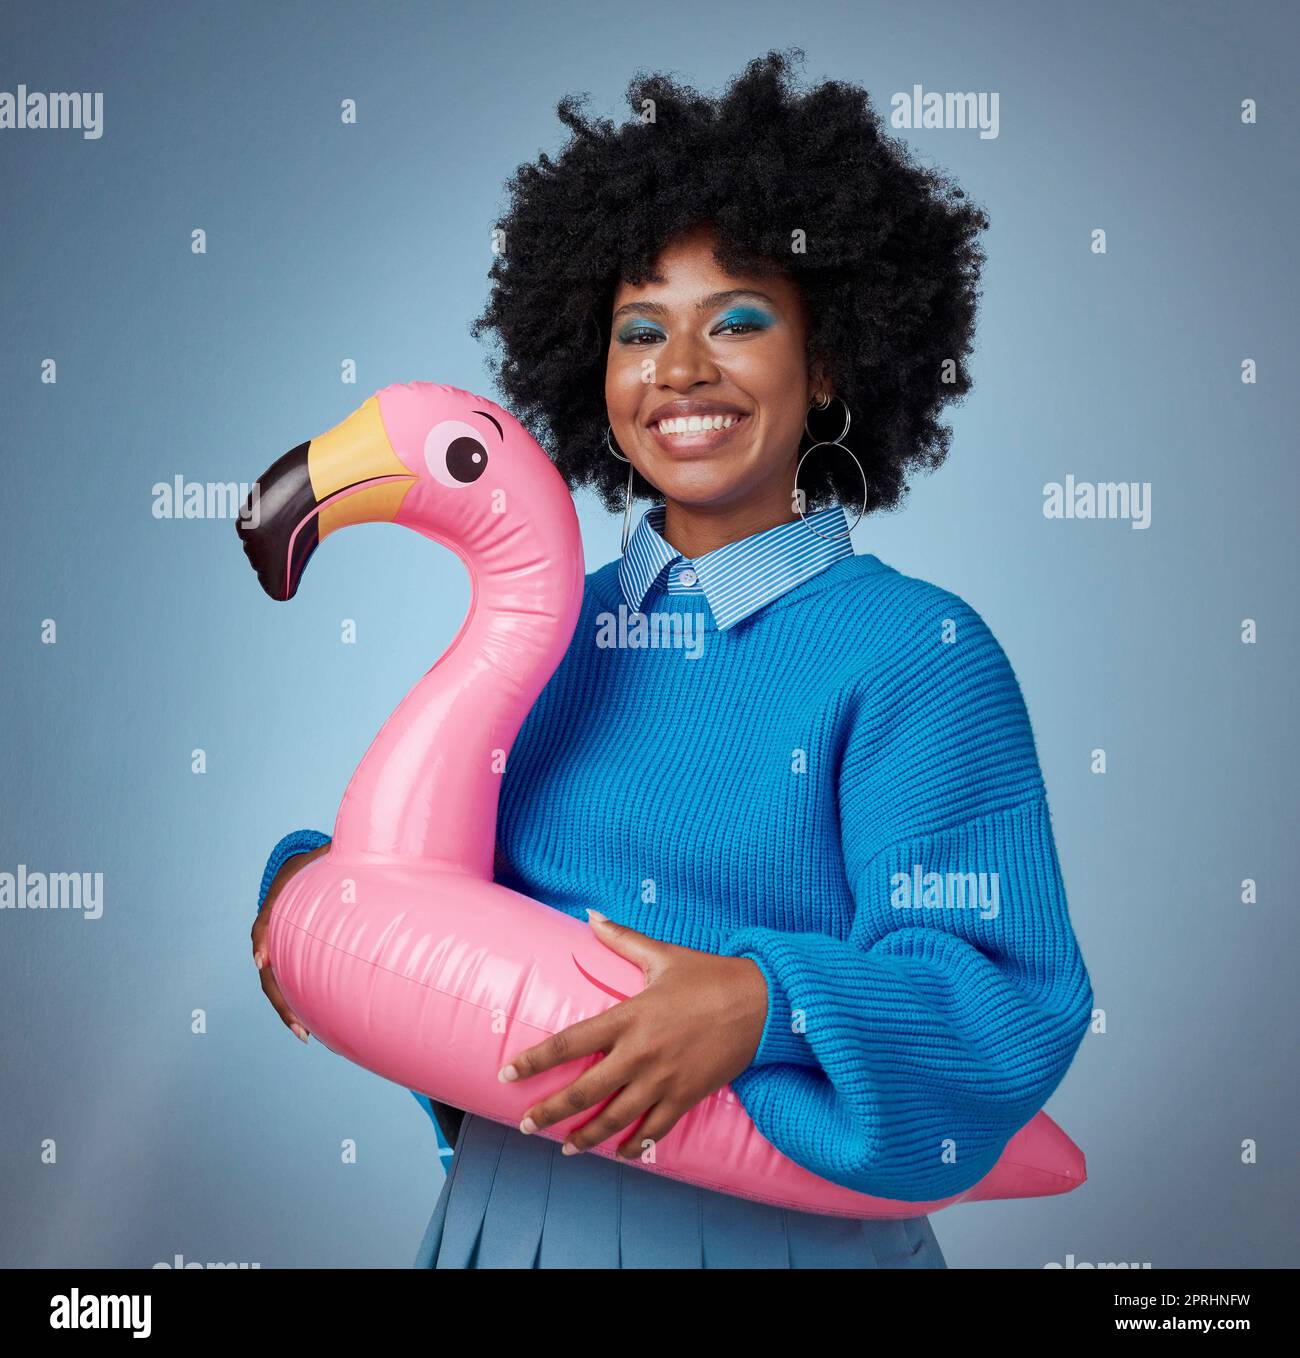 Porträt einer Frau in Blau mit einem Flamingo und einem Lächeln im Gesicht. Glückliche schwarze Frau mit aufblasbarem Vogelgummiring auf Hüfte auf blauem Hintergrund. Mocku Stockfoto